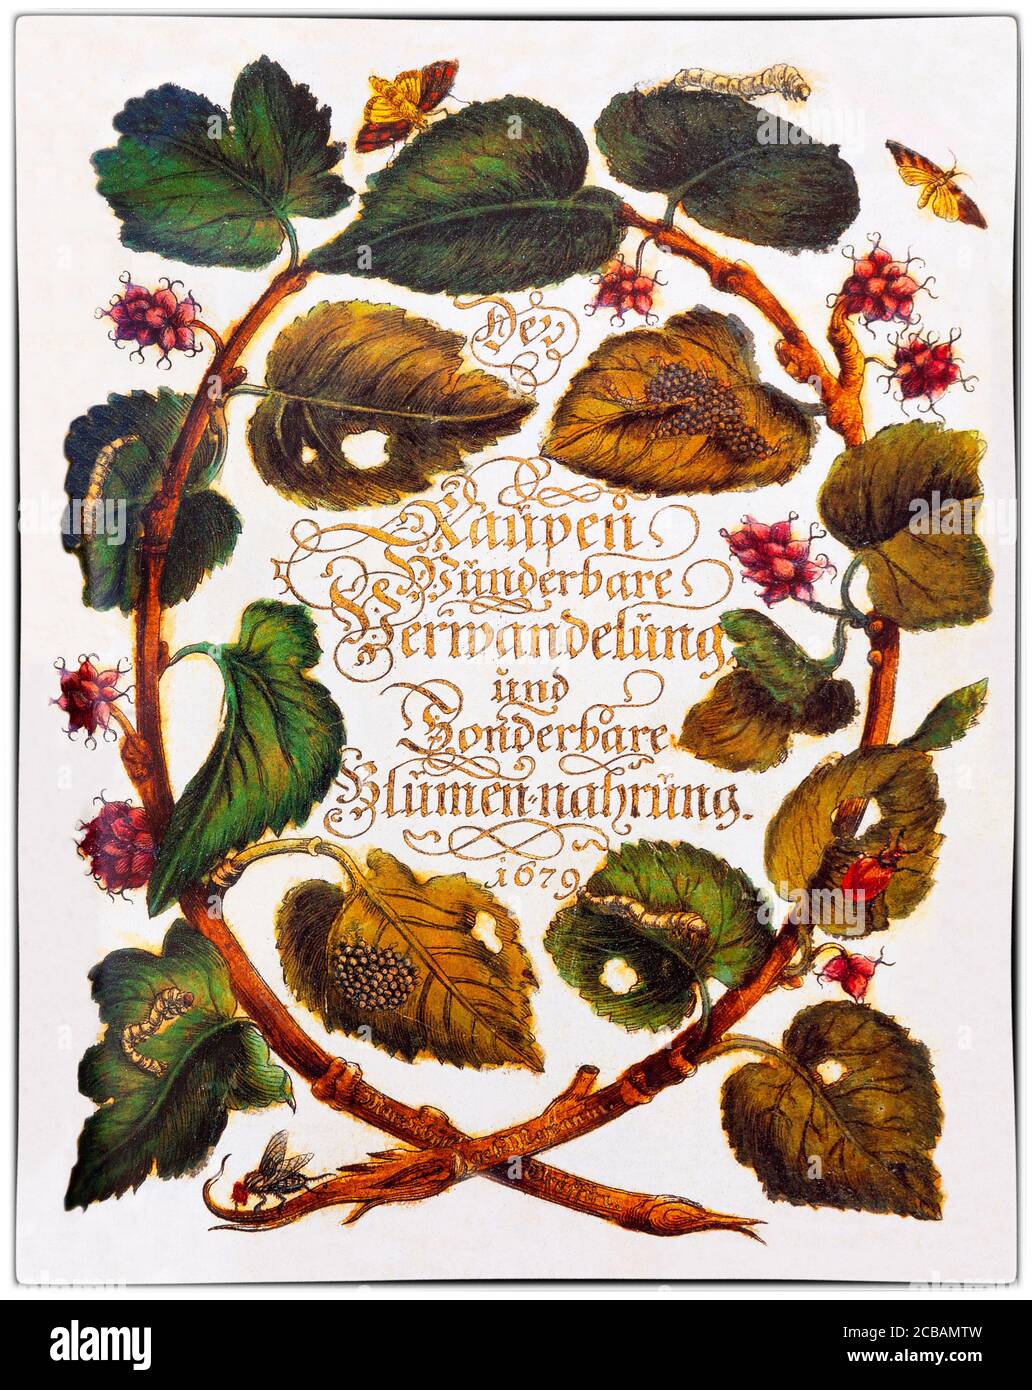 Maria Sibylla Merian (1647-1717) war eine in Deutschland geborene Naturforscherin und wissenschaftliche Illustratorin, eine Nachfahrin des Frankfurter Zweiges der Schweizer Merian-Familie. Merian war einer der ersten europäischen Naturforscher, der Insekten direkt beobachtete. Die Abbildung zeigt das Titelblatt zu dem ersten großen Werk des Künstlers, 'der Raupen wunderbare Verwandlung und andersartige Blumennahrung' (Trans: The Raupen' wonderful Transformation and strange Flower Food) Stockfoto